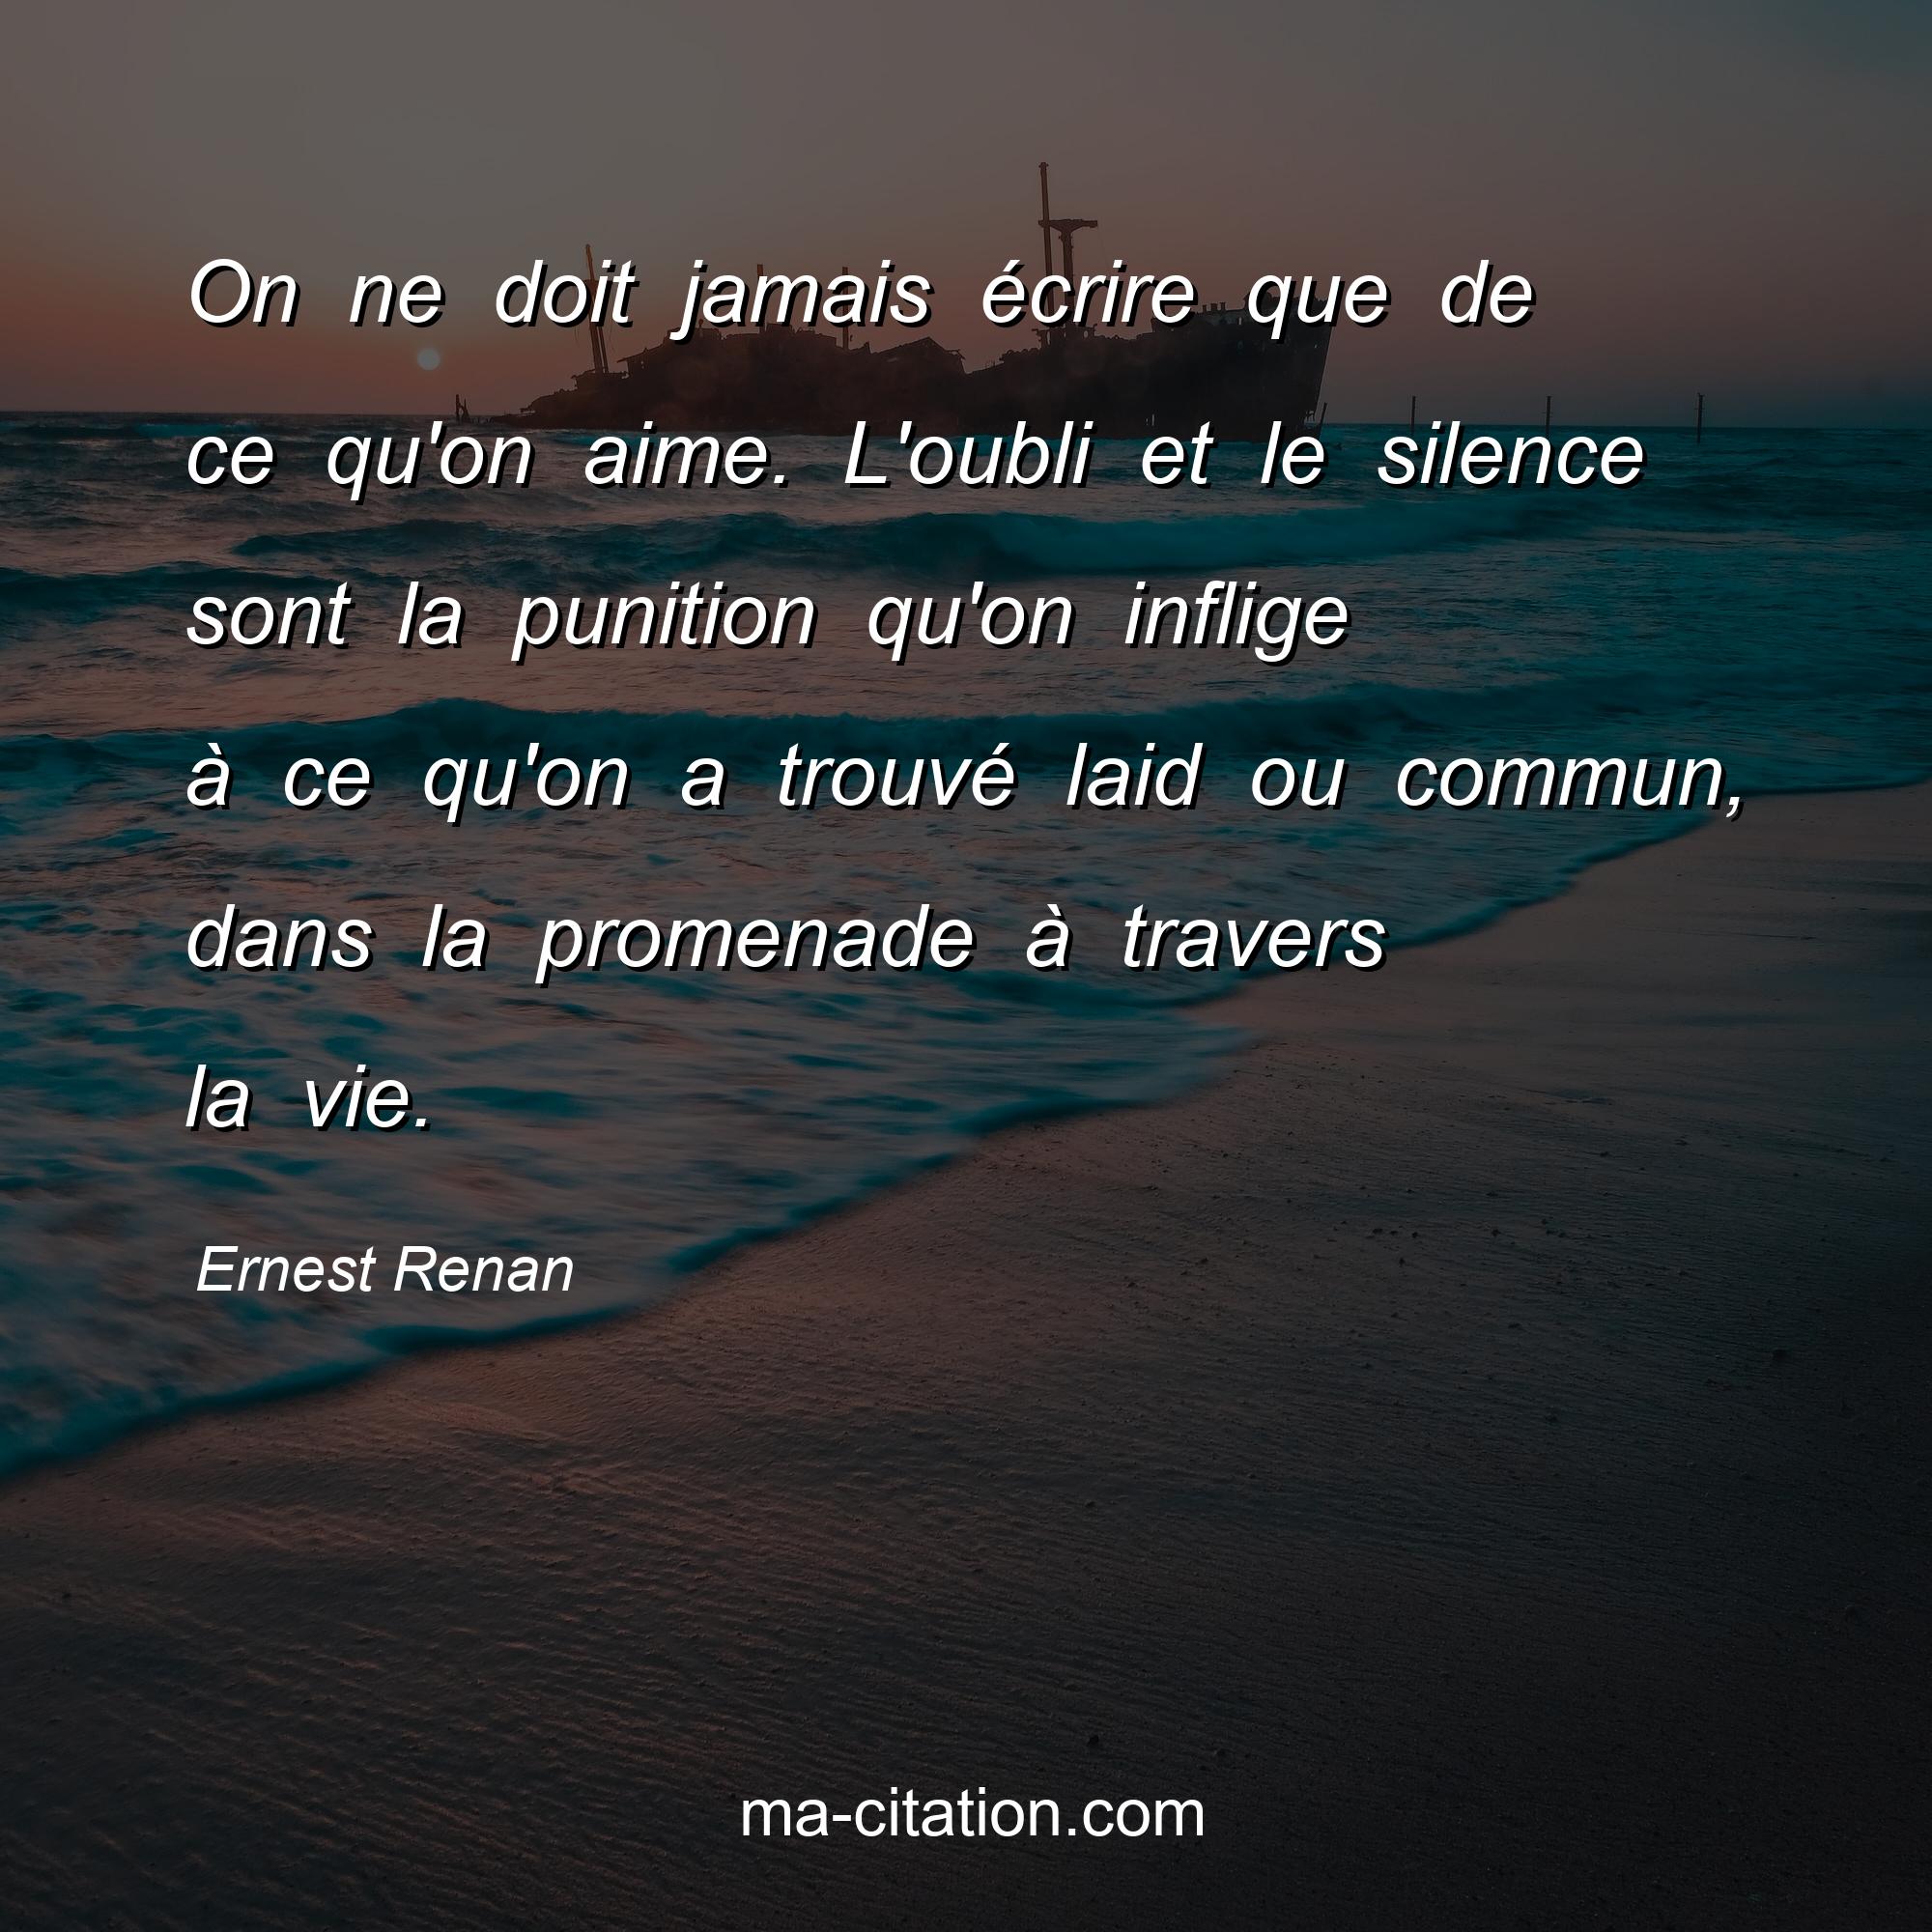 Ernest Renan : On ne doit jamais écrire que de ce qu'on aime. L'oubli et le silence sont la punition qu'on inflige à ce qu'on a trouvé laid ou commun, dans la promenade à travers la vie.